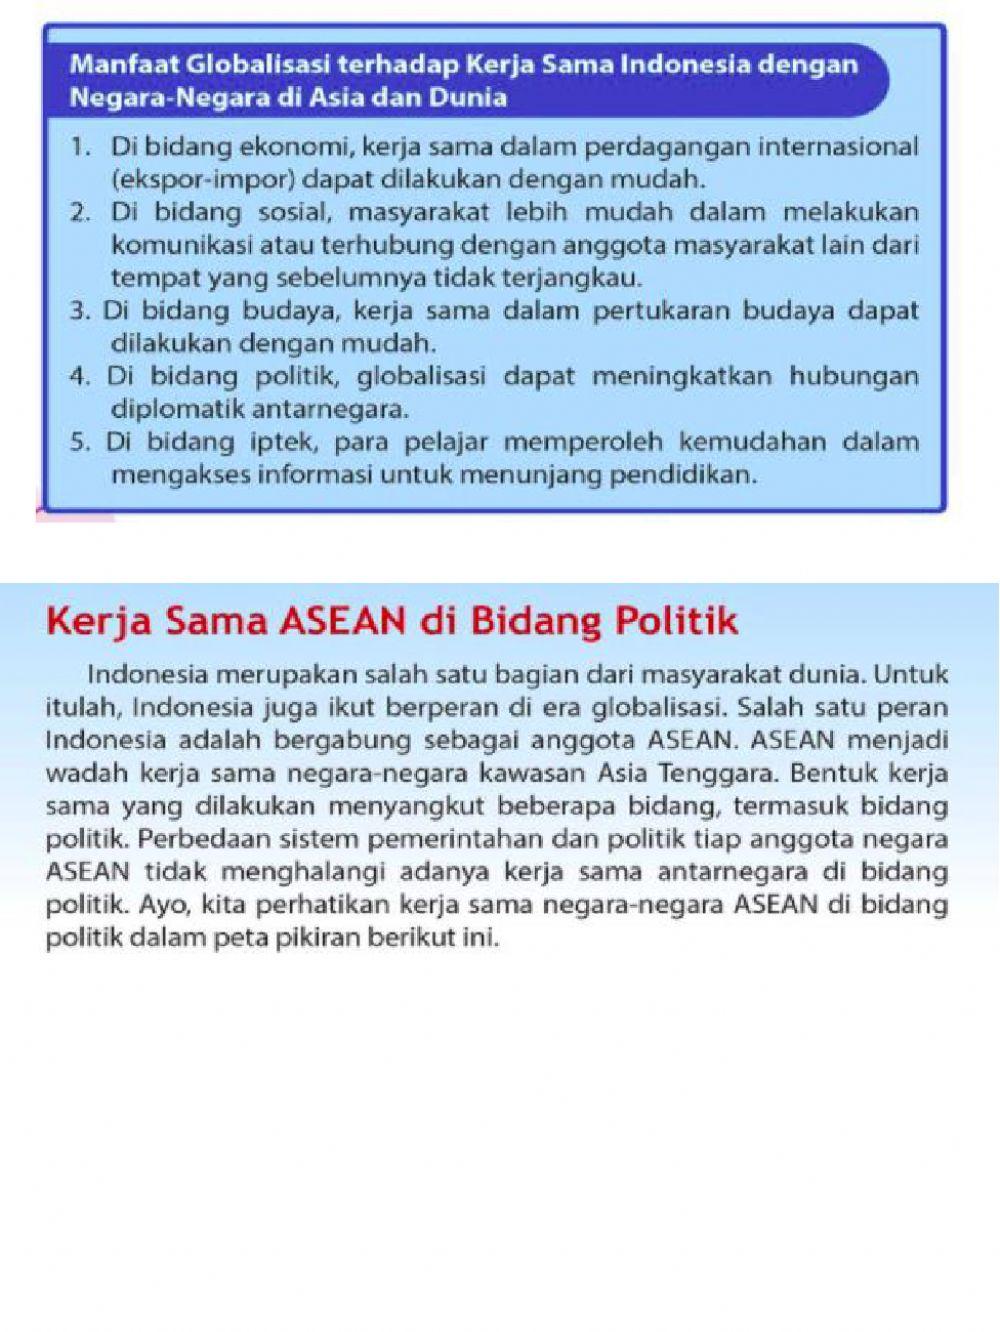 Peran Politik & Iptek di ASEAN